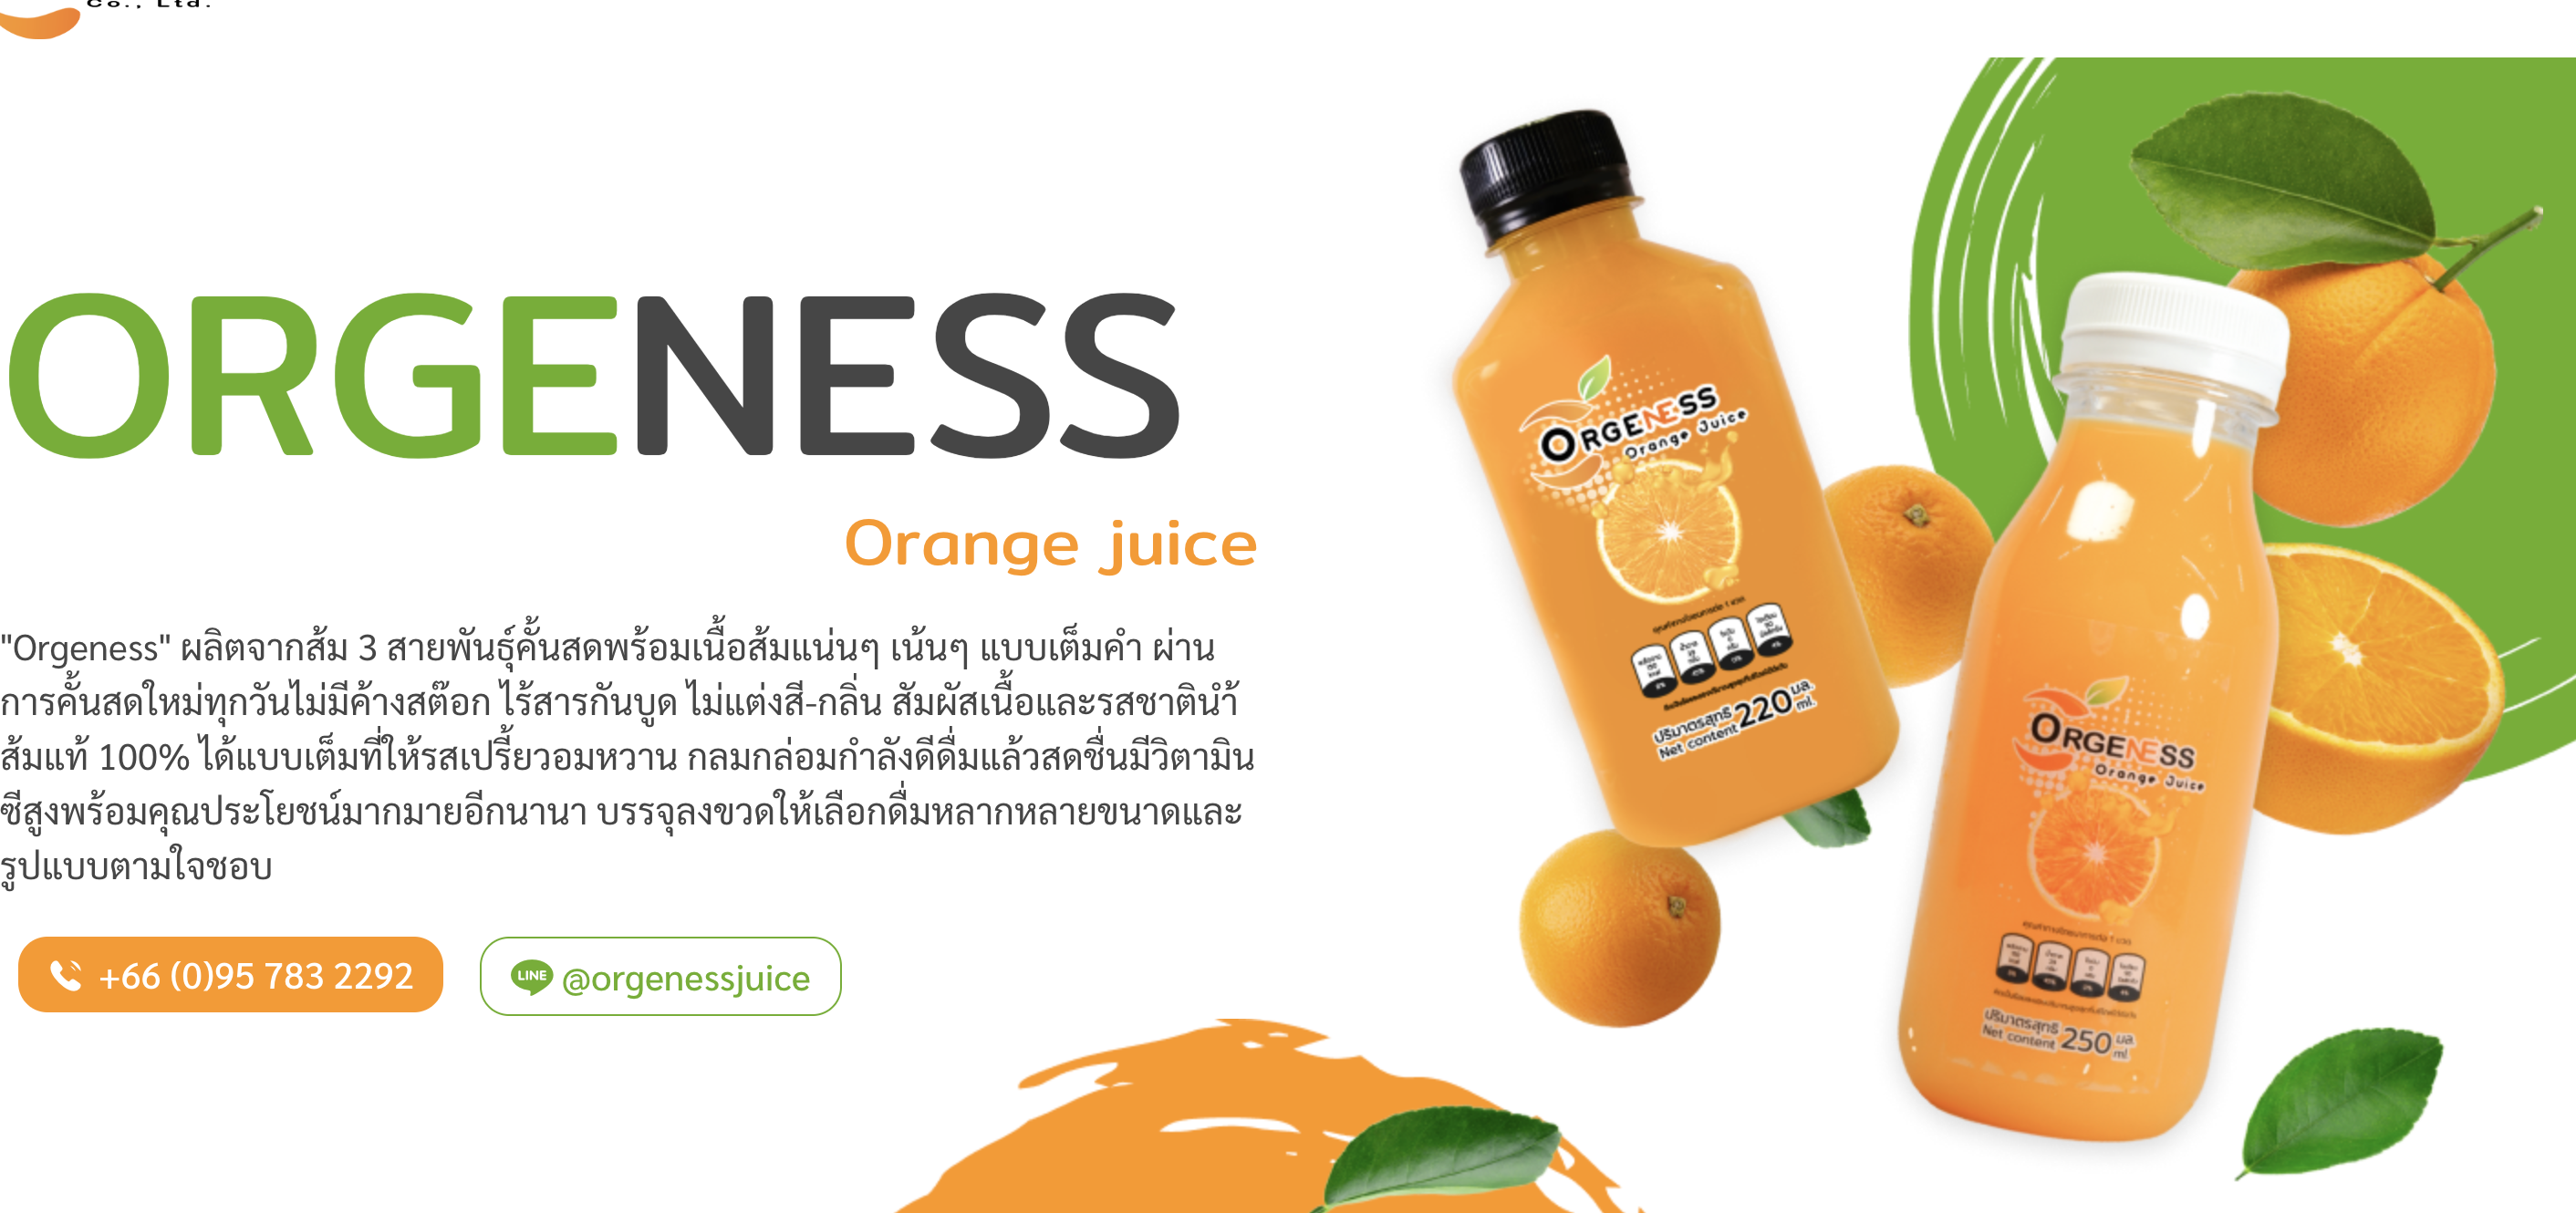 ดื่ม น้ำส้ม คั้นทุกวัน ผิวดีเกินคาด